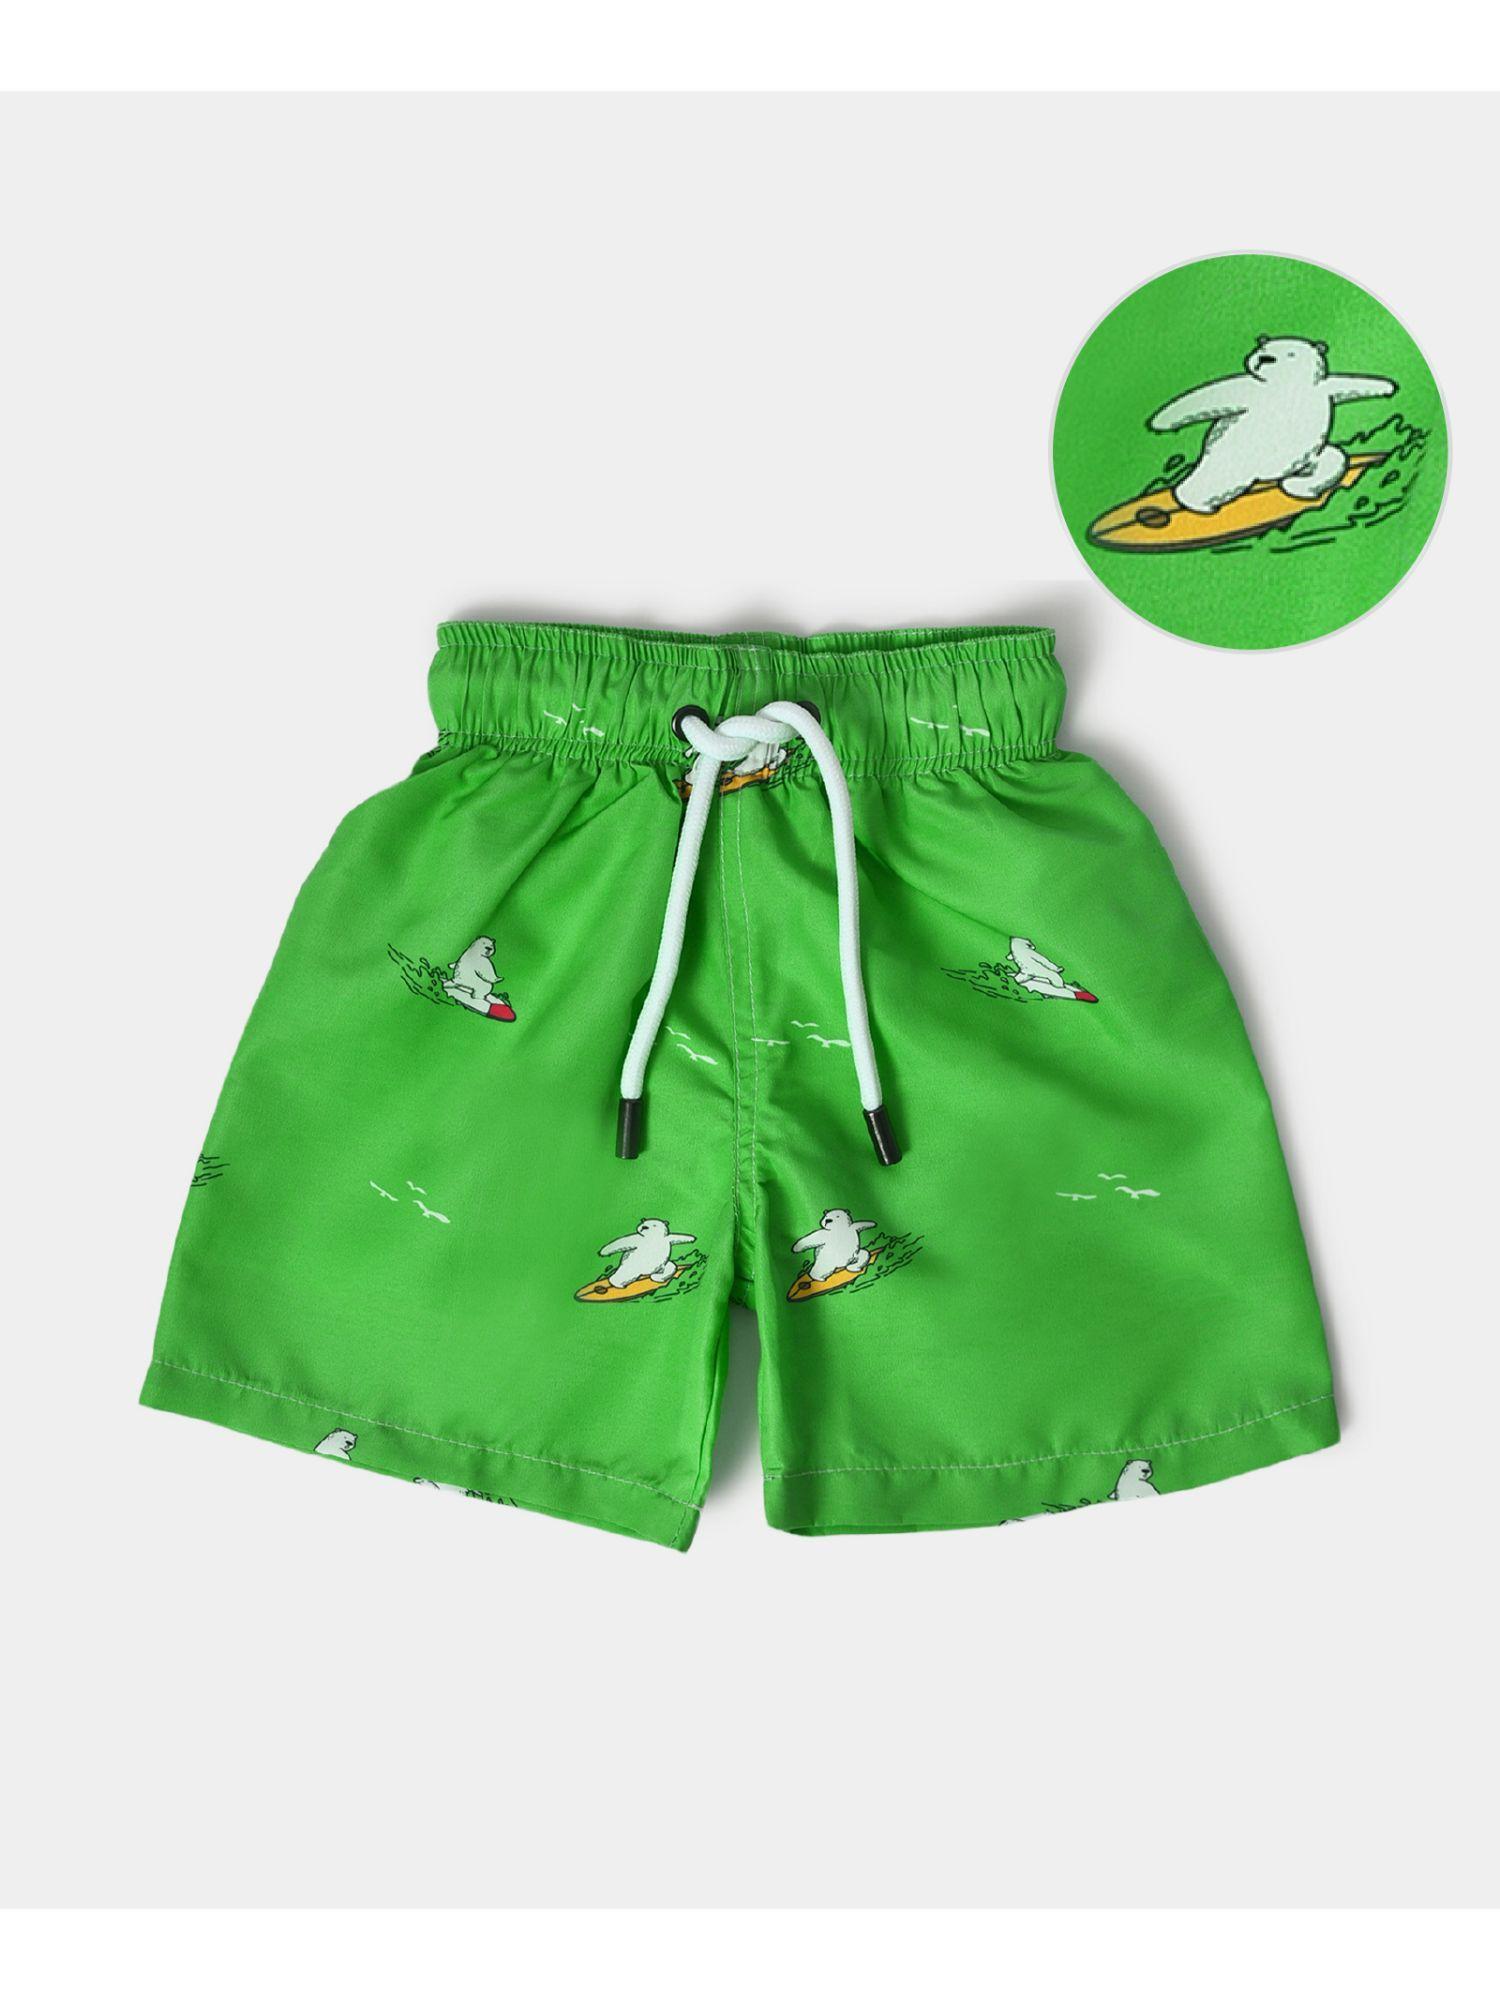 boys swimwear shorts- green